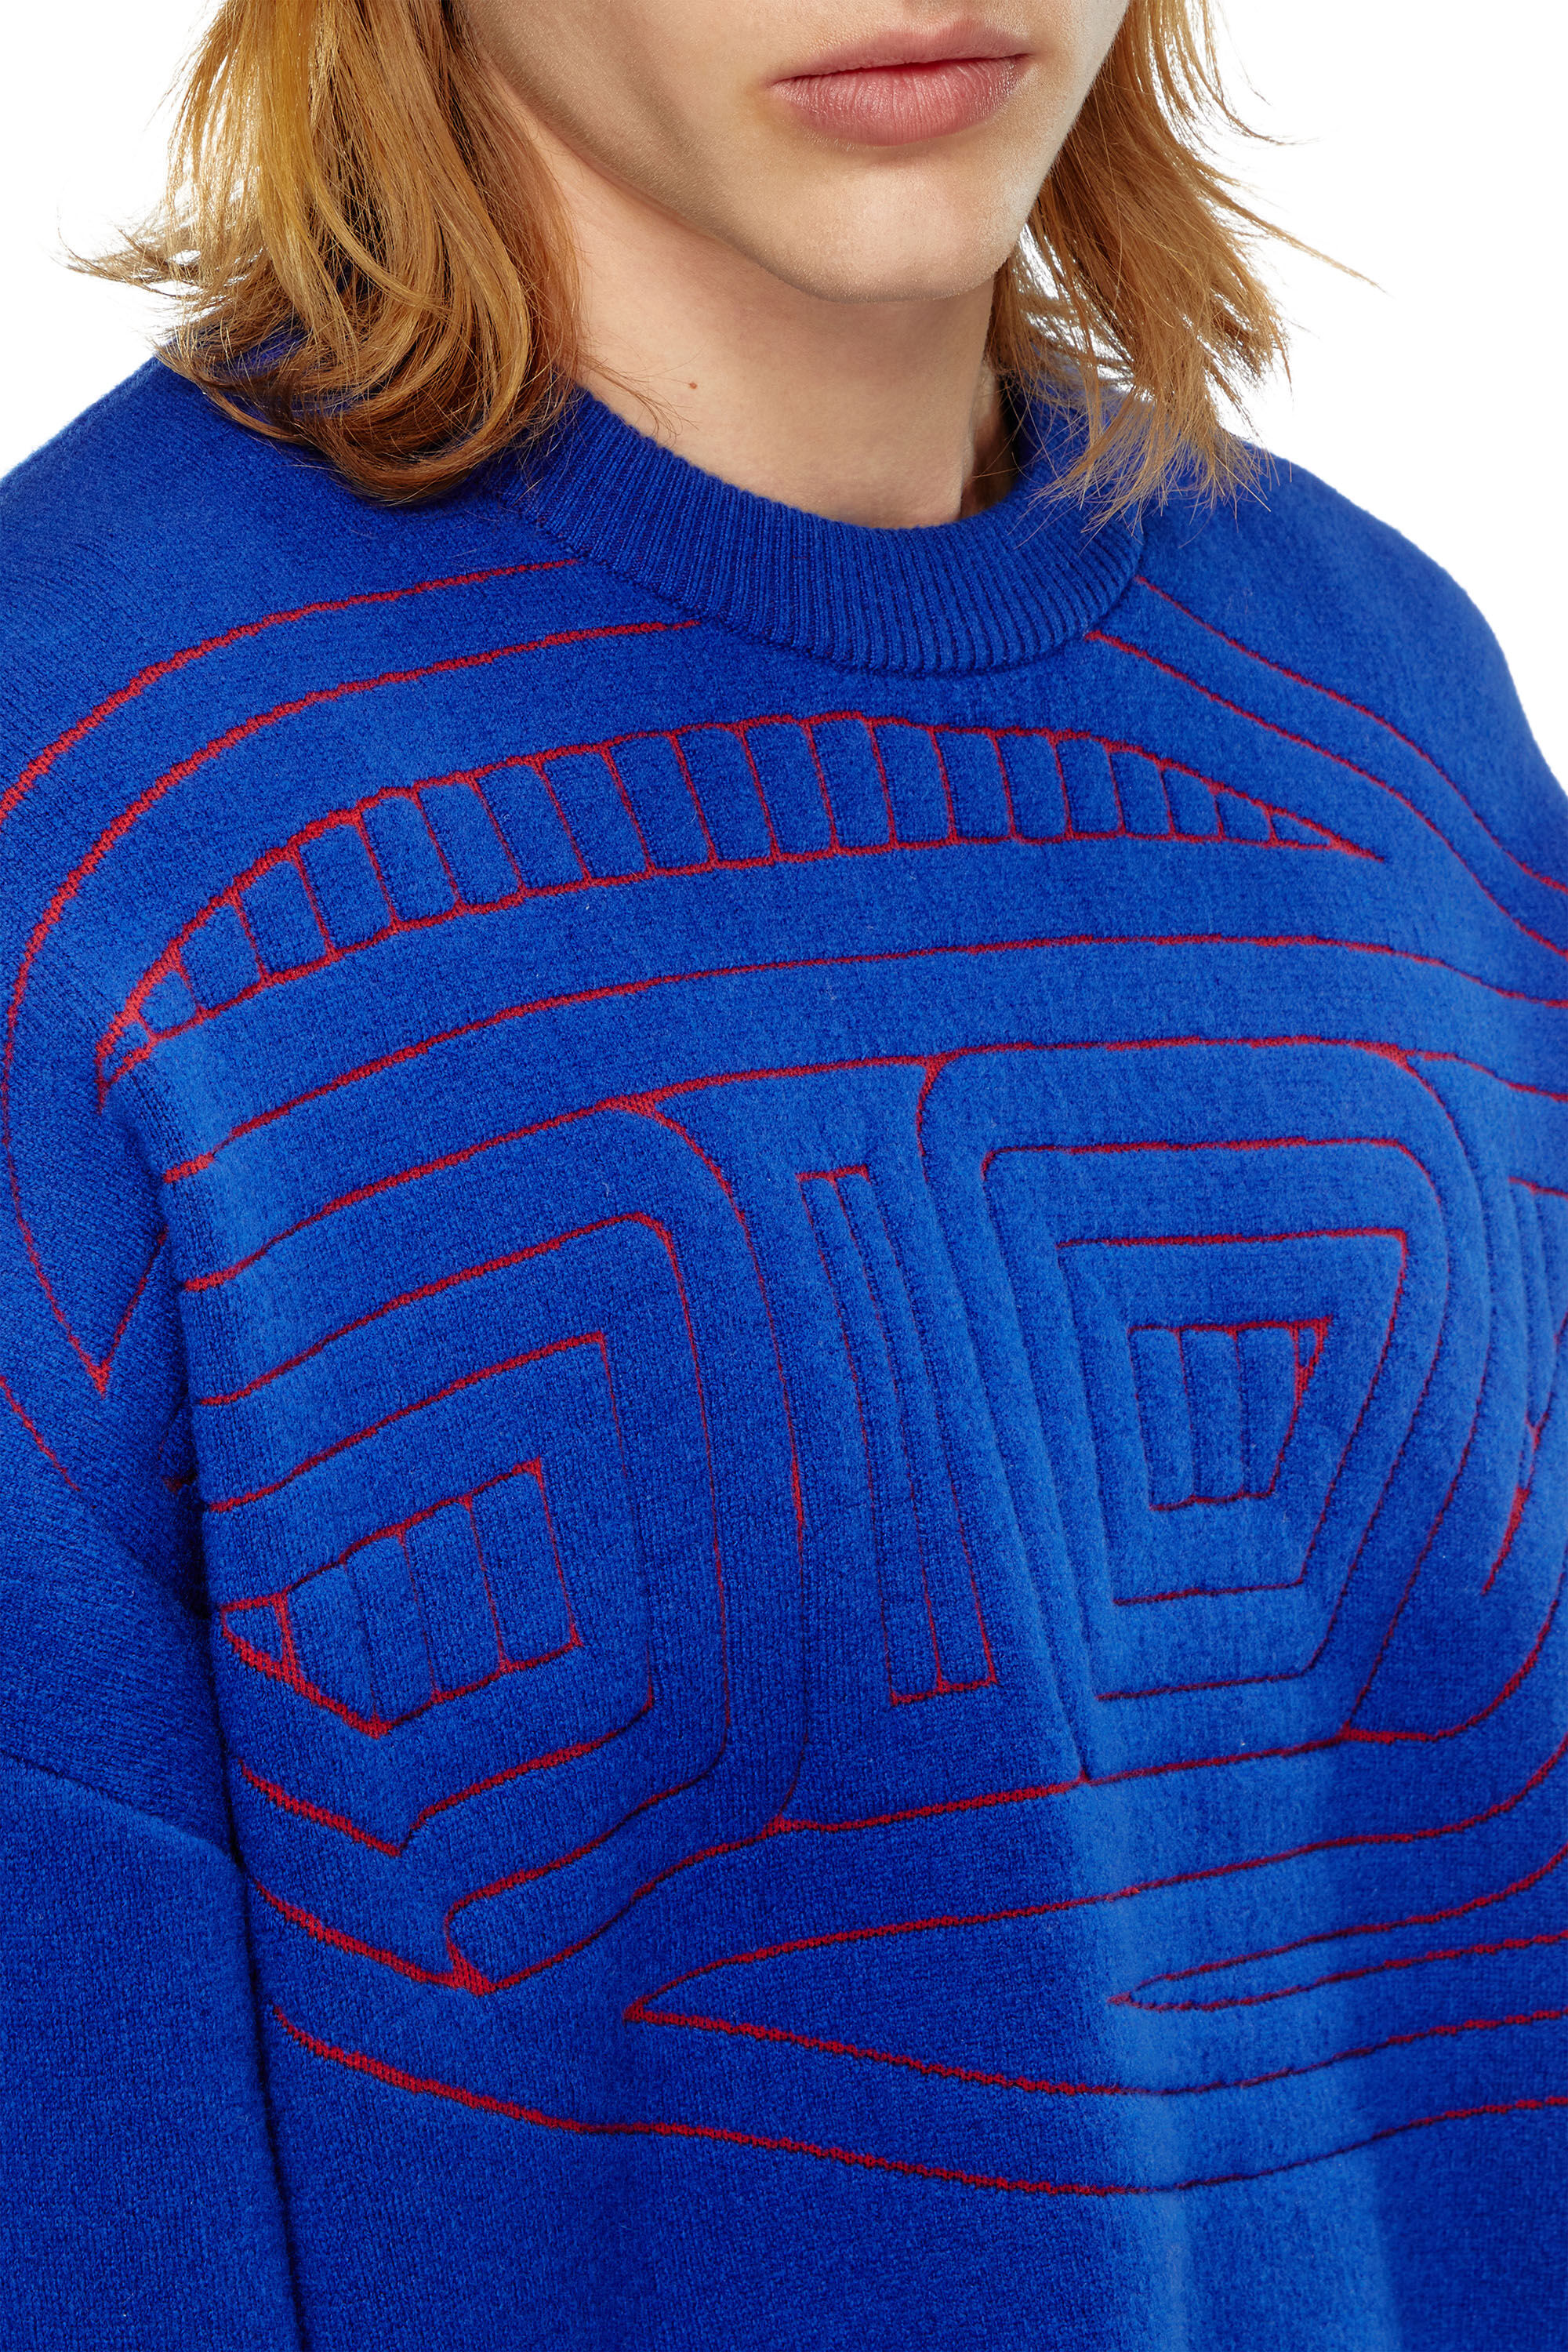 Diesel - K-RATIO, Hombre Jersey de mezcla de lana con logotipo gráfico in Azul marino - Image 5